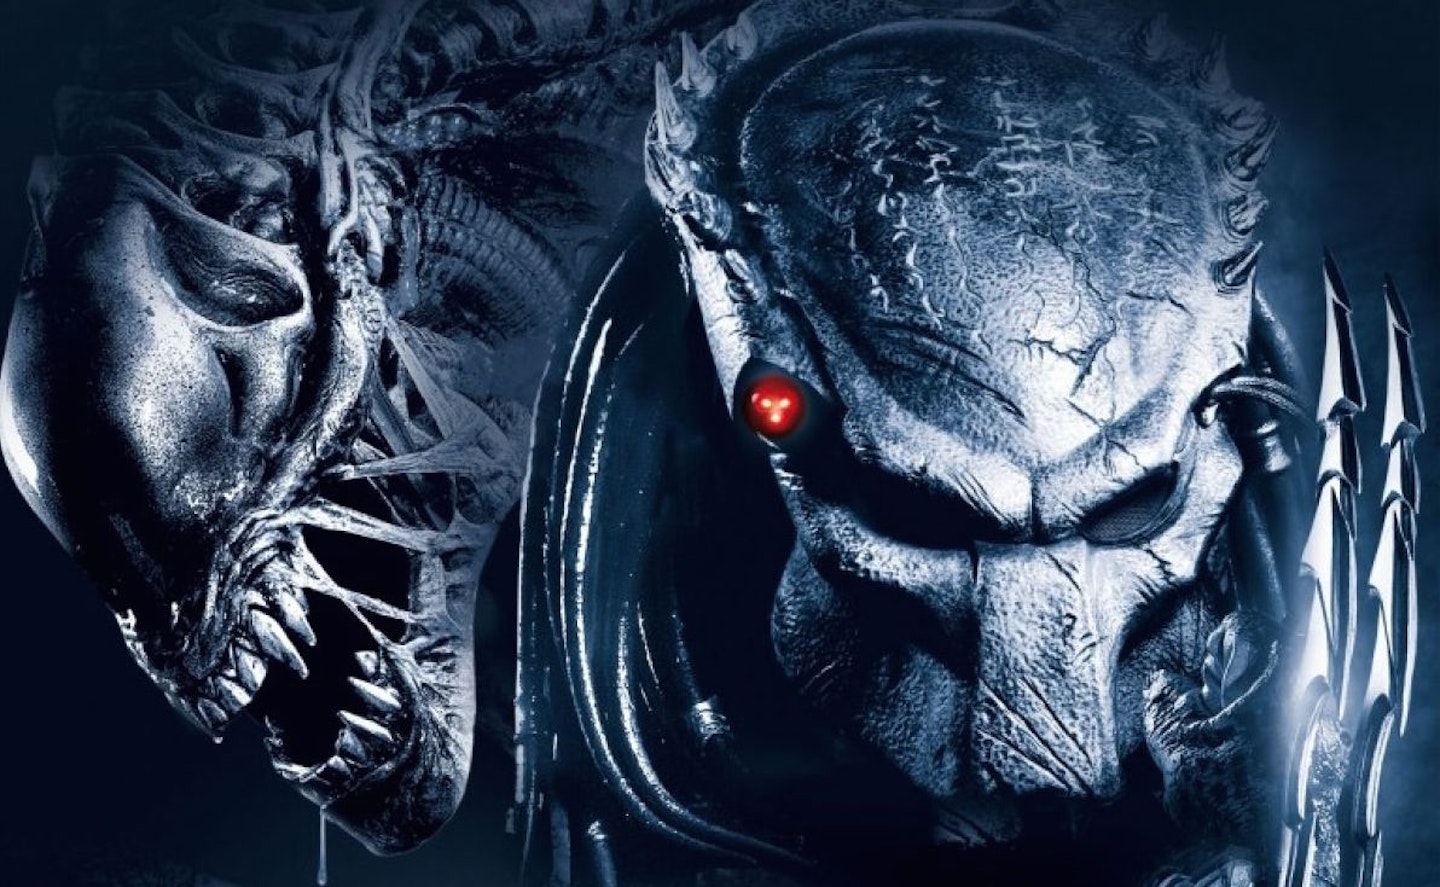 Buy Xbox 360 Aliens Vs Predator Online in UAE